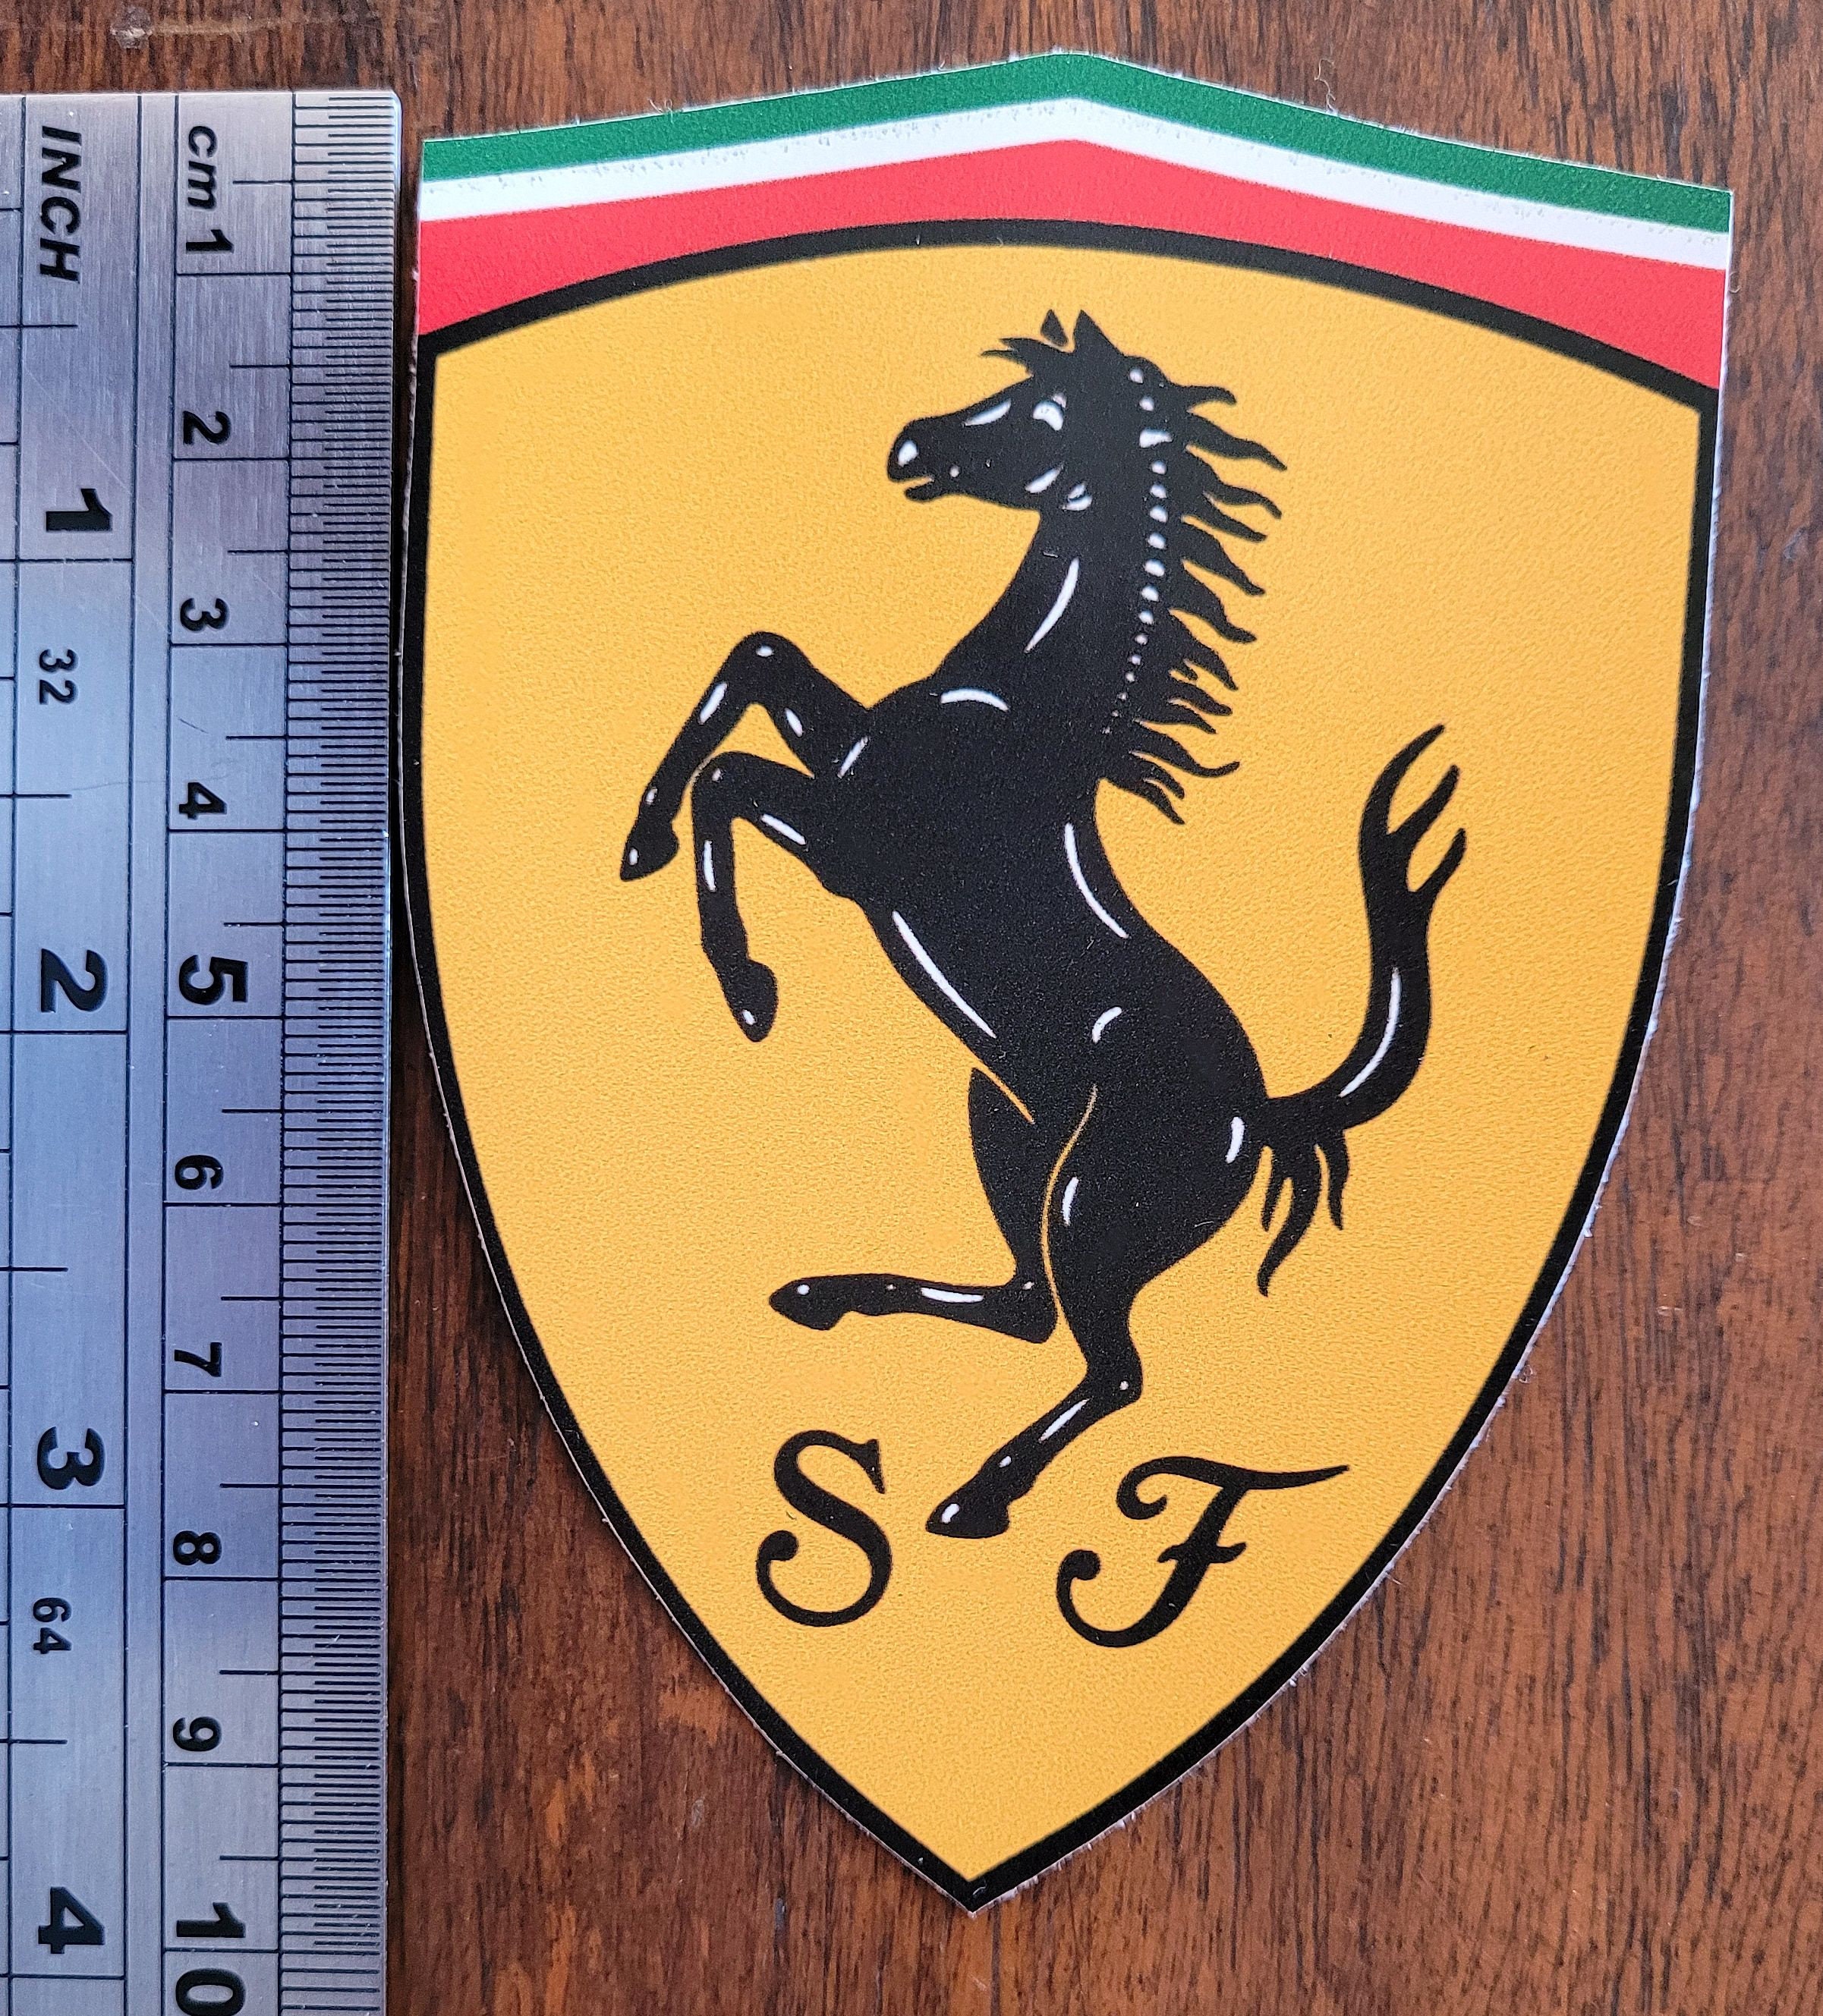 Ferrari Shield Small Stickers